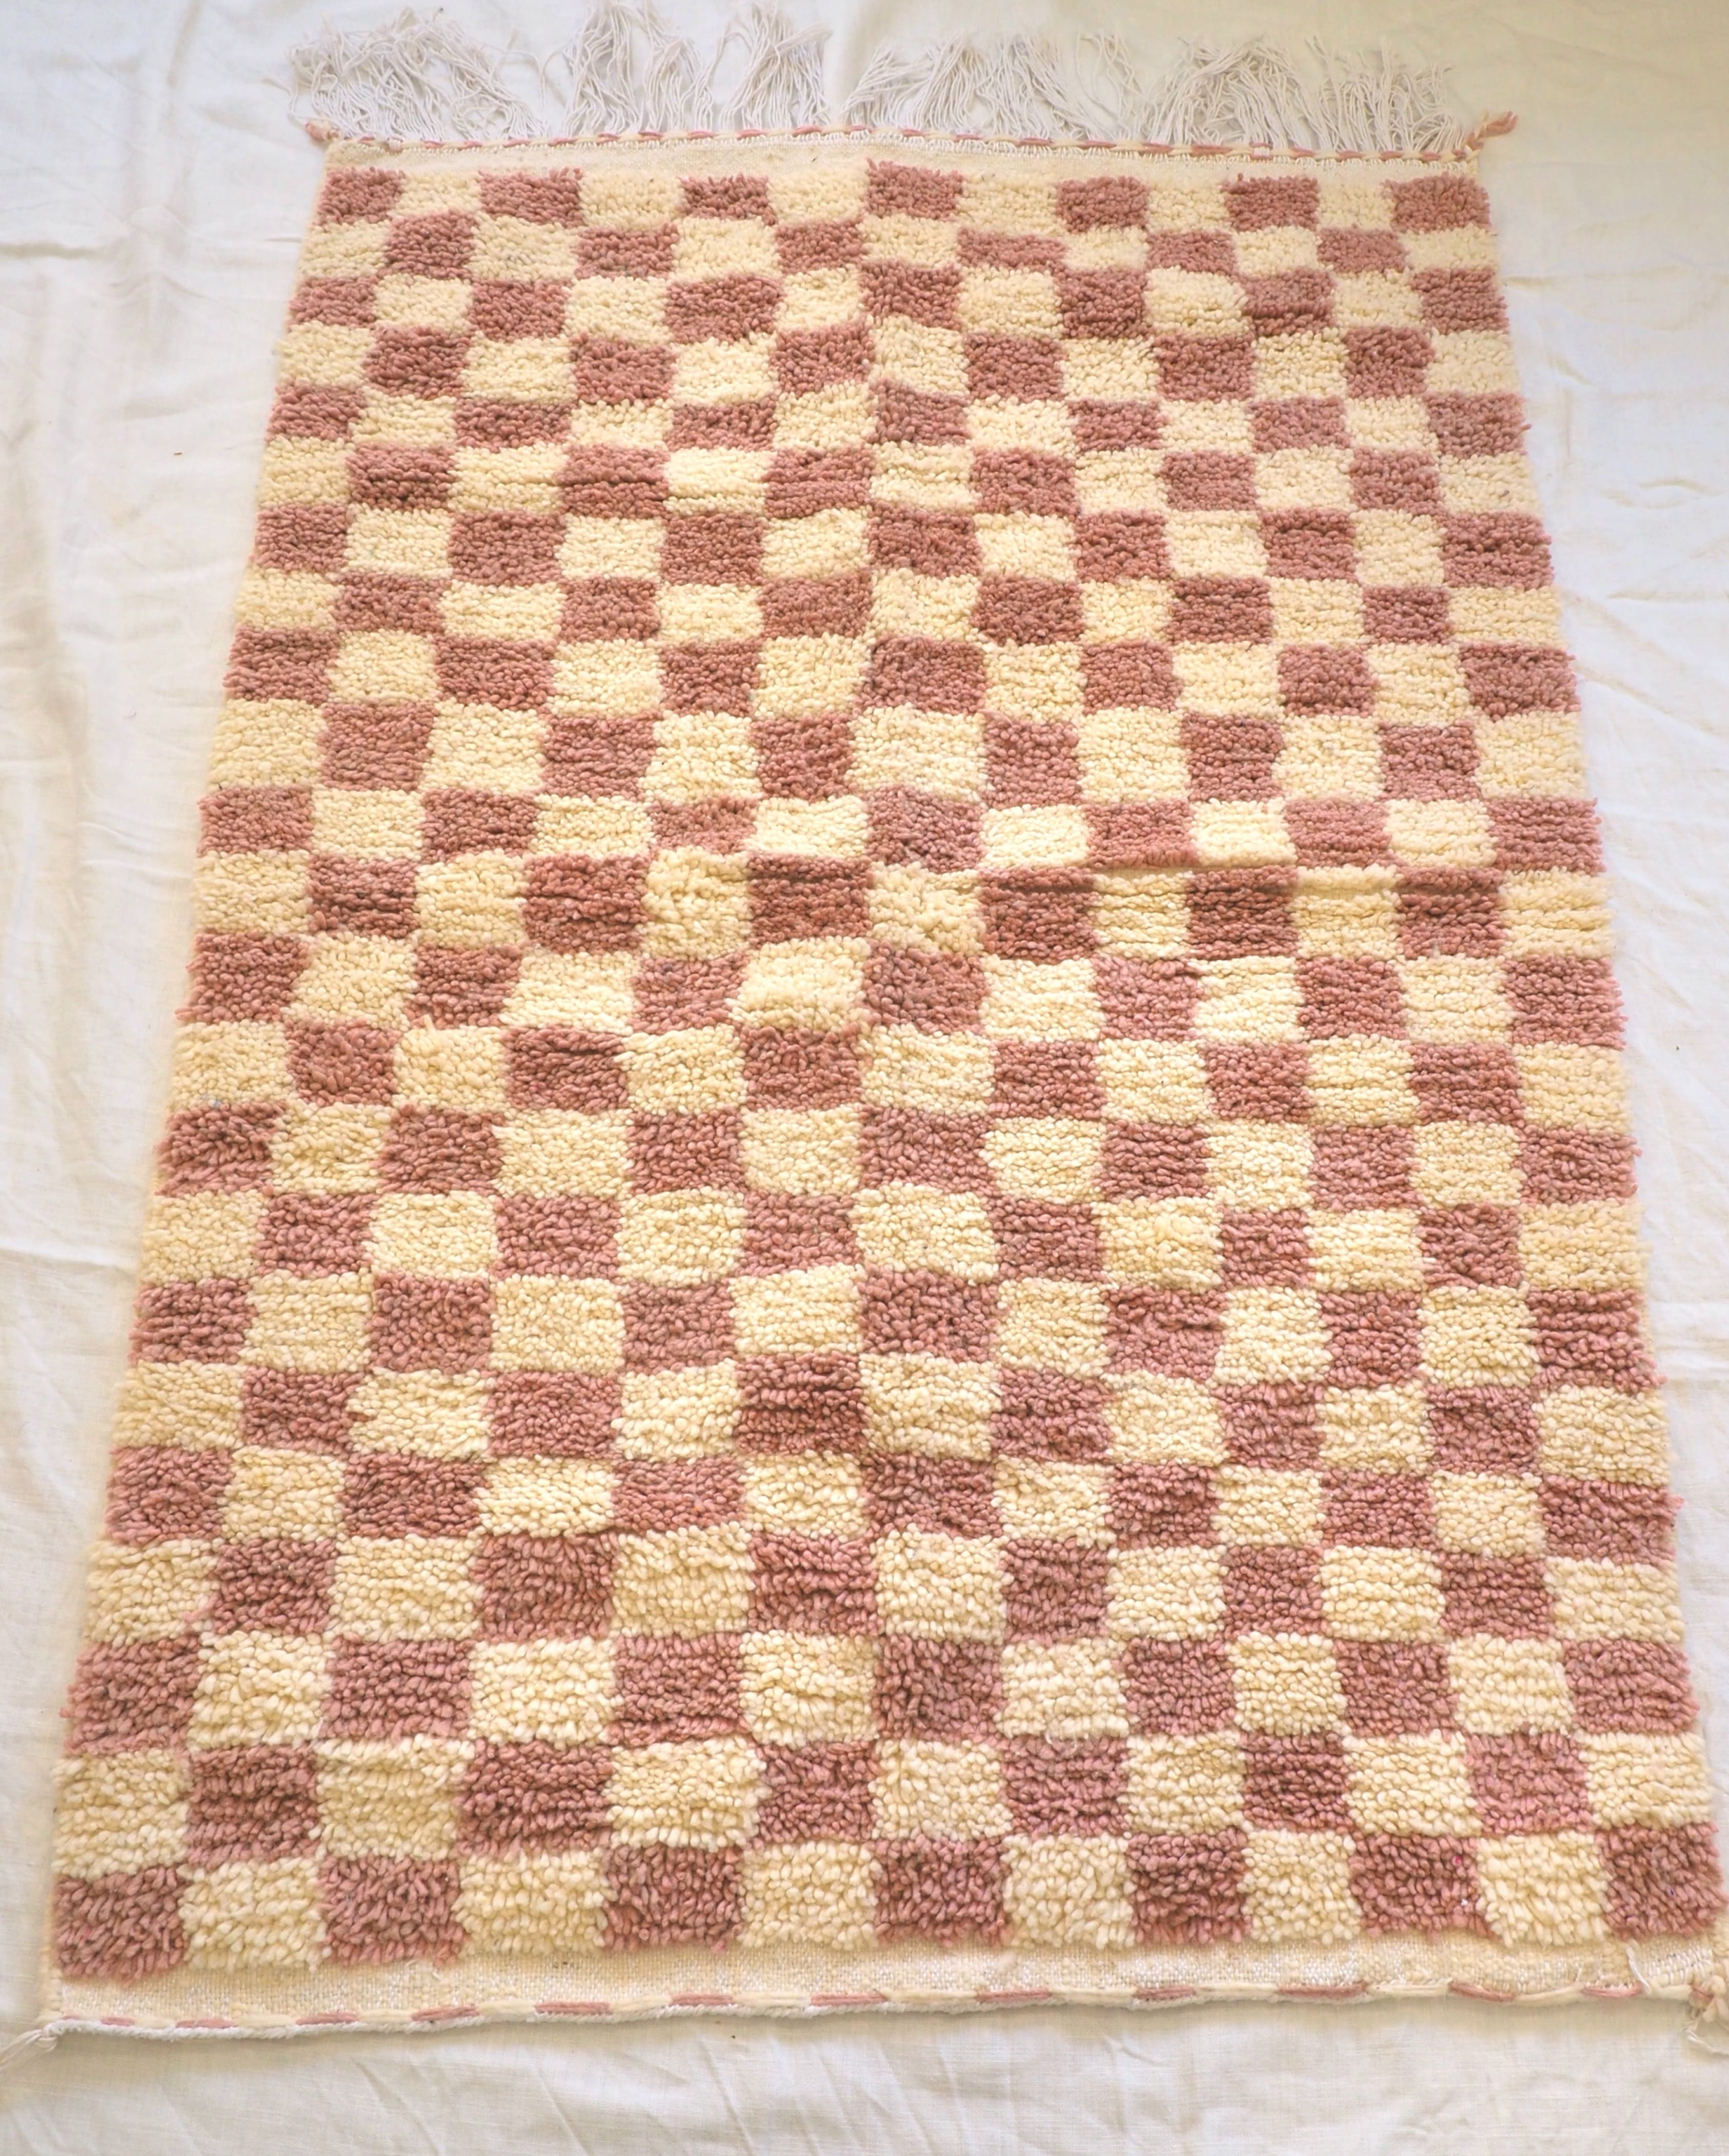 Vrai tapis Berbère Marocain motifs graphiques carrés vieux rose et blanc crème